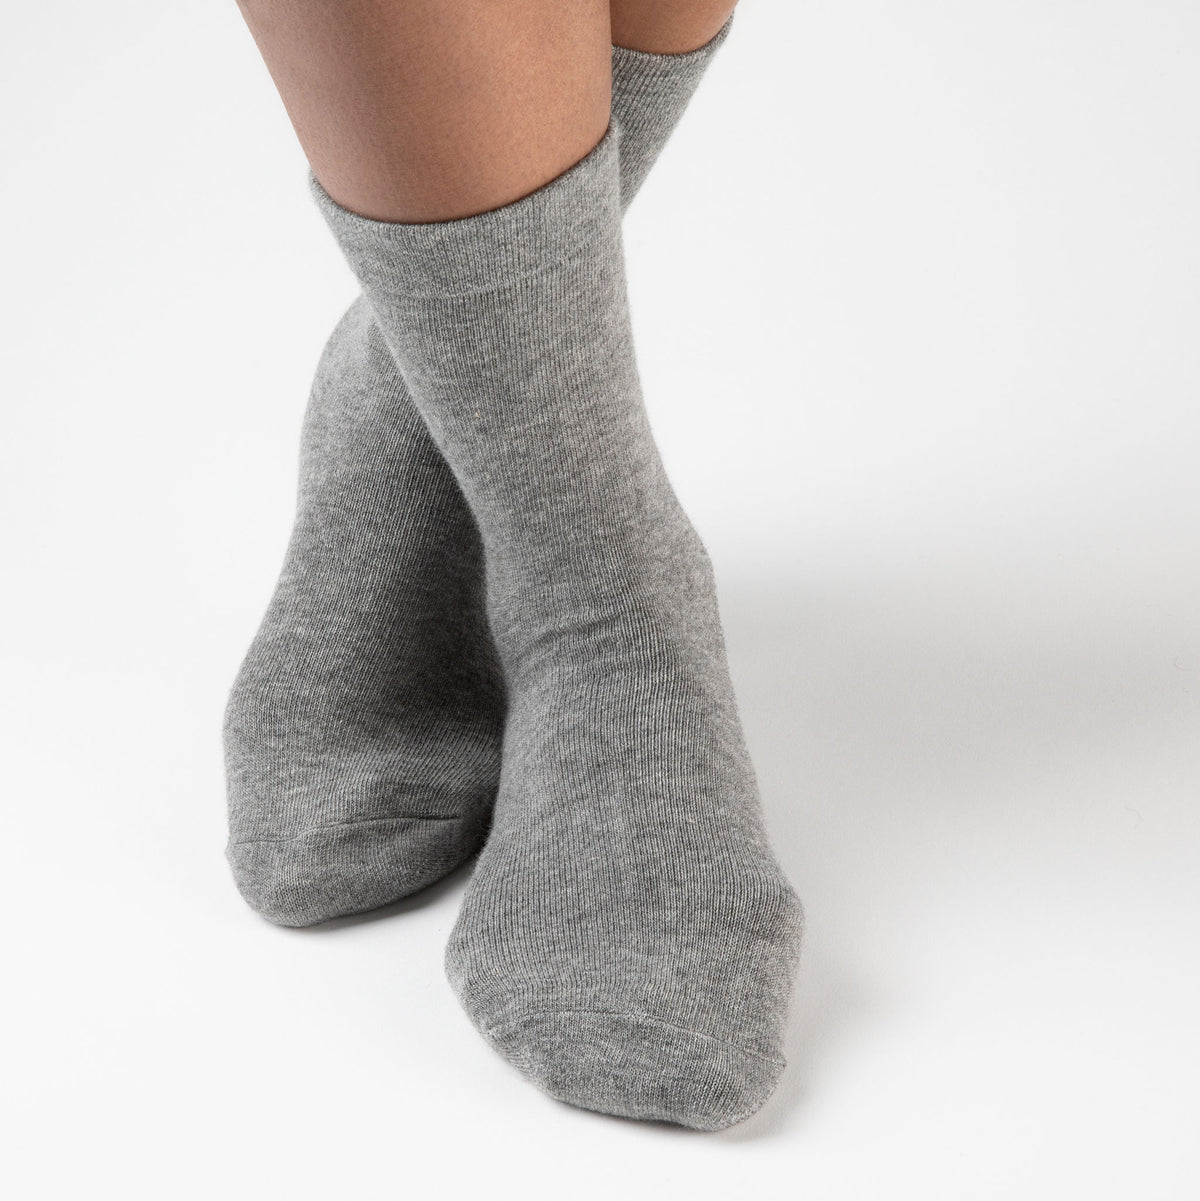 Women's Dark Grey Original Crew Non-Slip Socks - 3 pairs